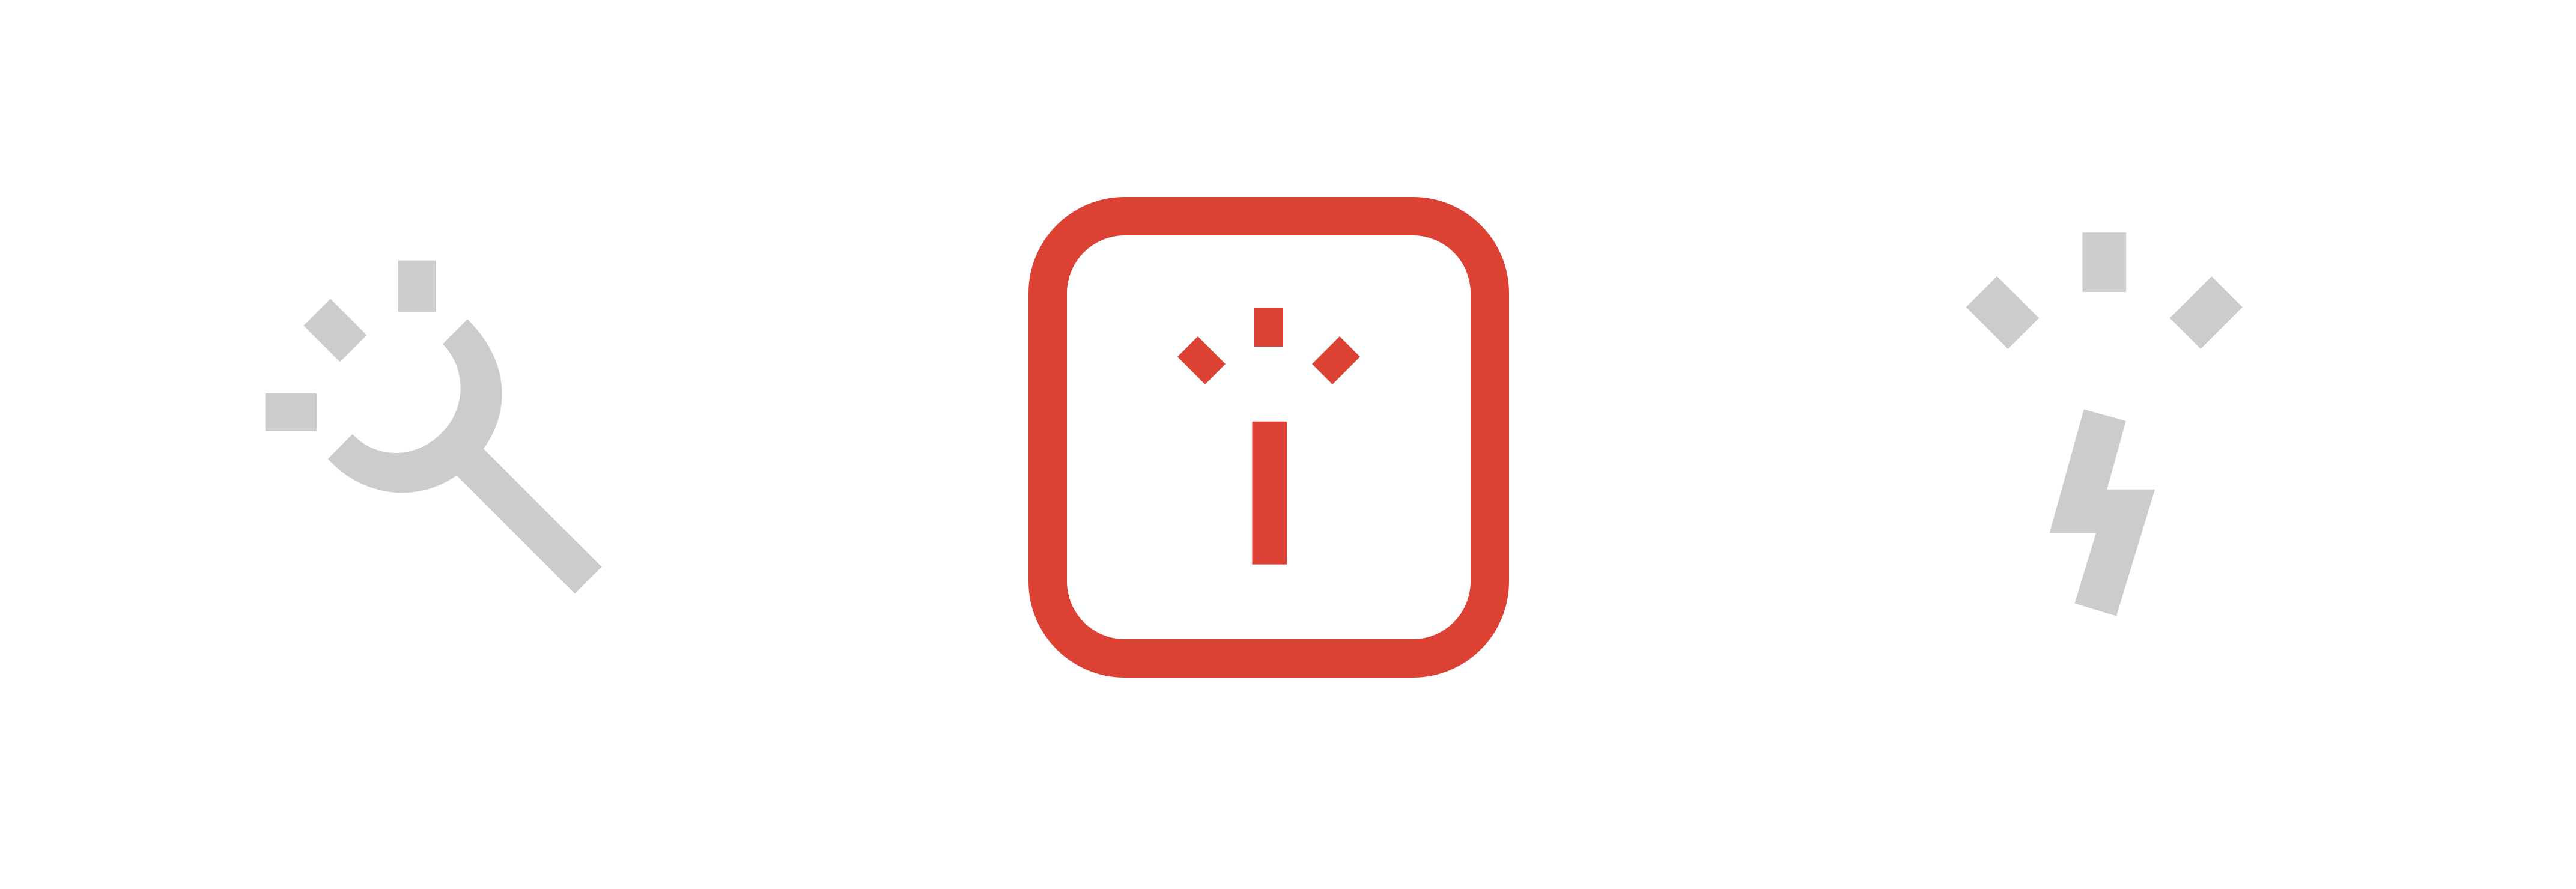 TechMagic logo iterations